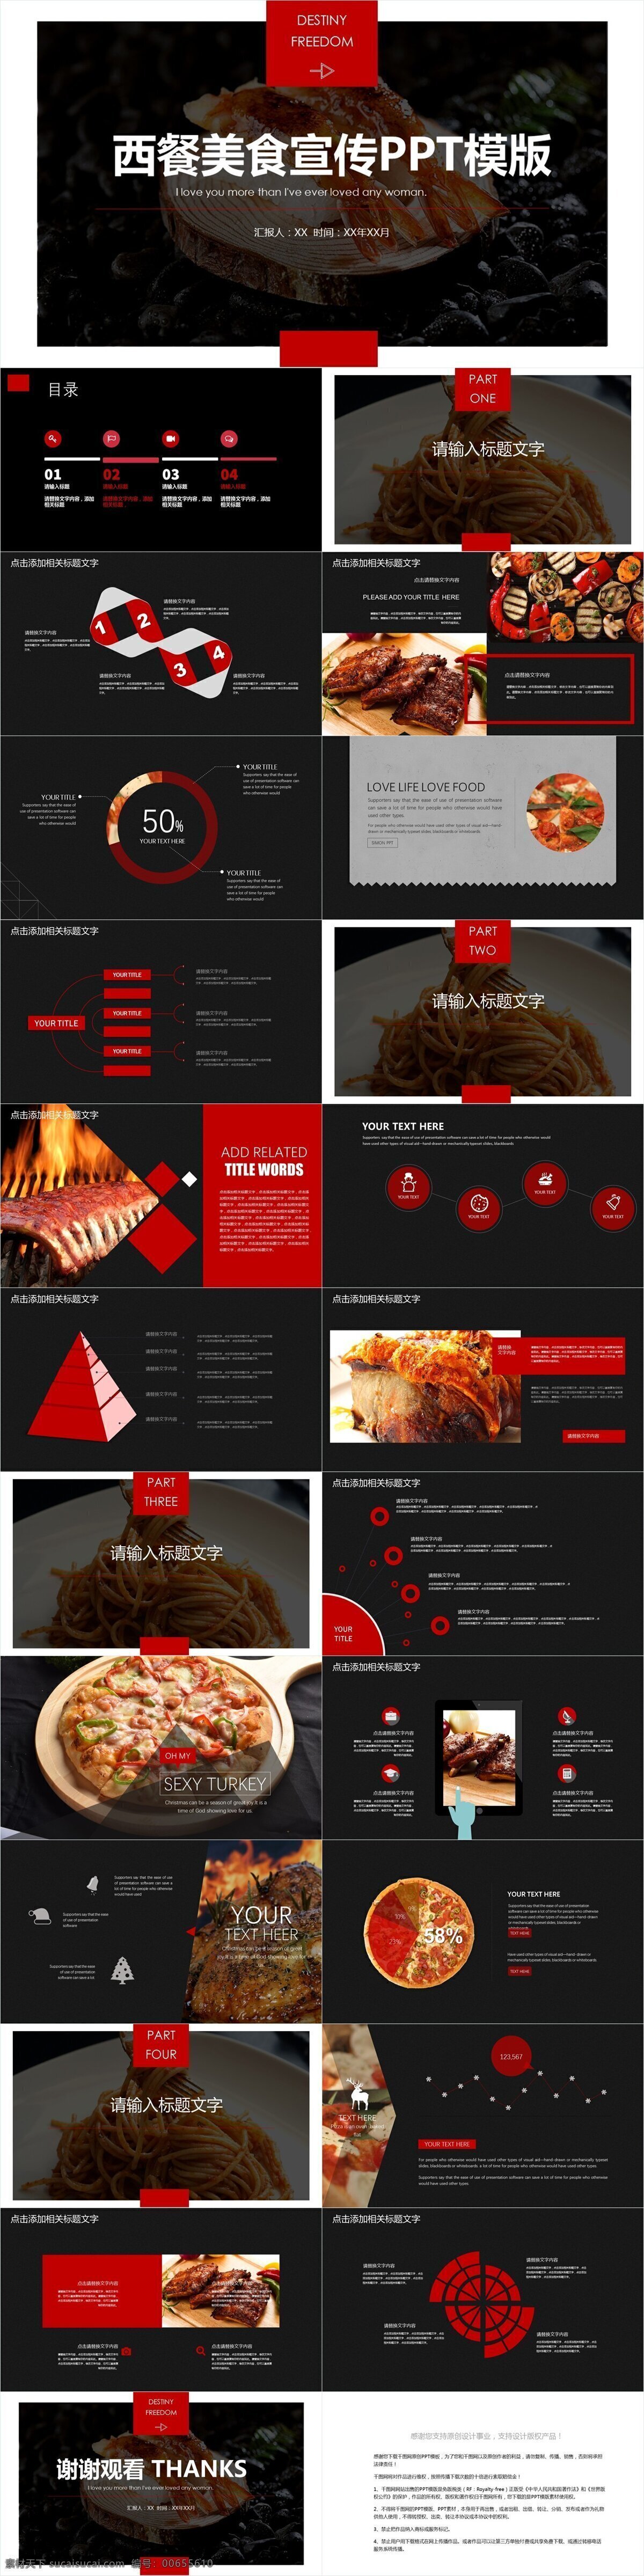 简约 经典 西餐 美食 宣传 模板 创意 企业宣传 企业简介 西餐美食 产品介绍 商务合作 策划